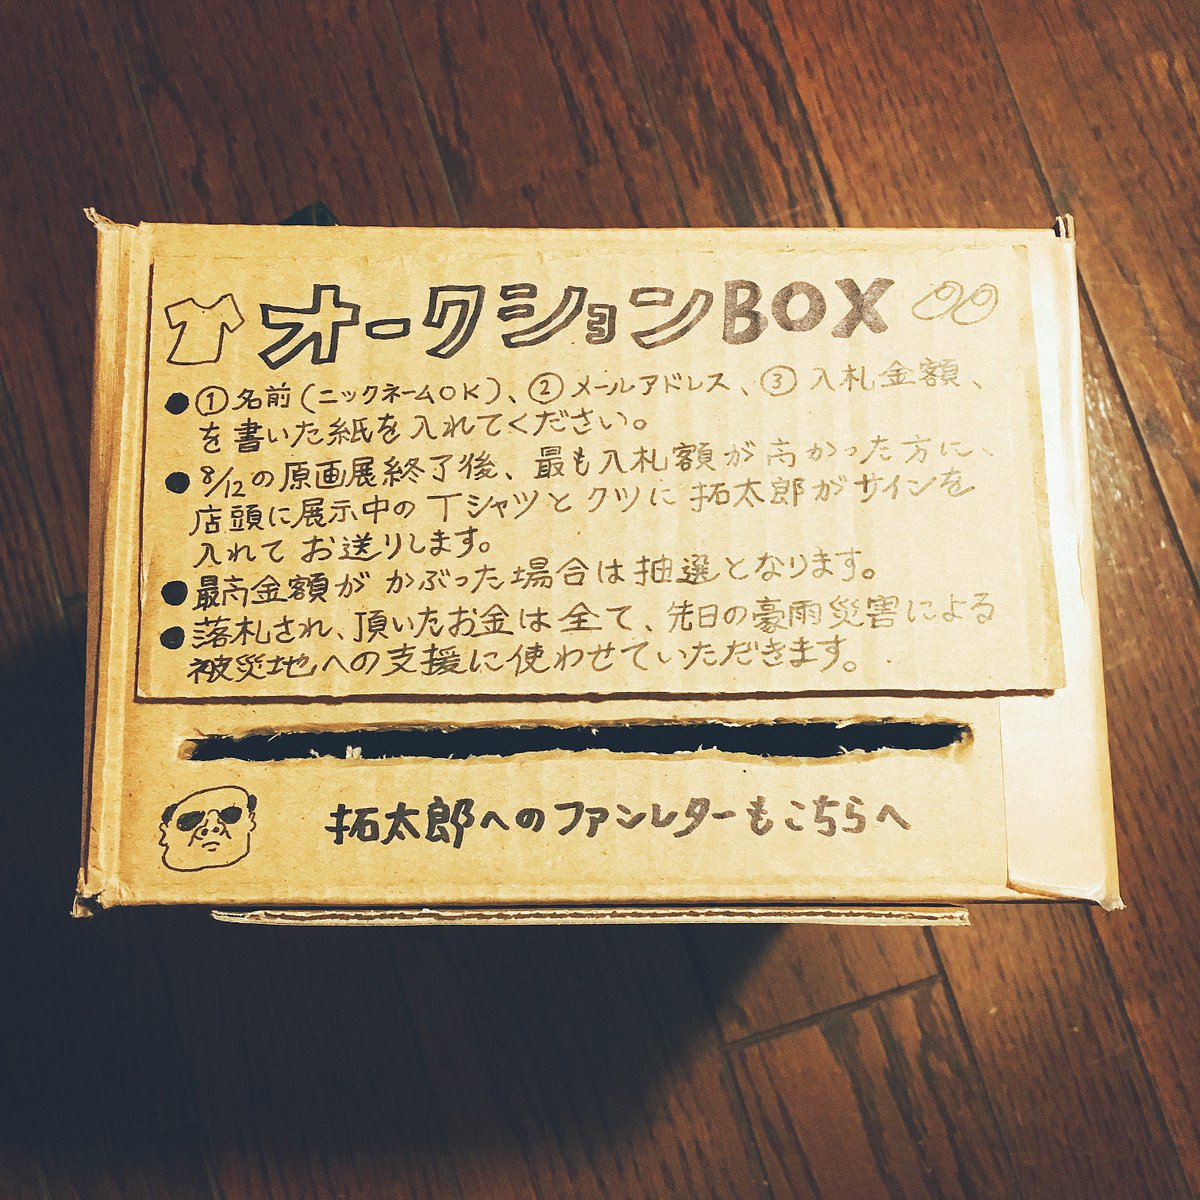 #藤岡拓太郎原画展 にて、8/1より「オークションBOX」を設置します。詳しくは写真1枚目を見てください。要するにTシャツとクツのオークションです。この箱はファンレターBOXも兼ねてるので、お手紙を書いて入れて頂けると、とても喜び… 